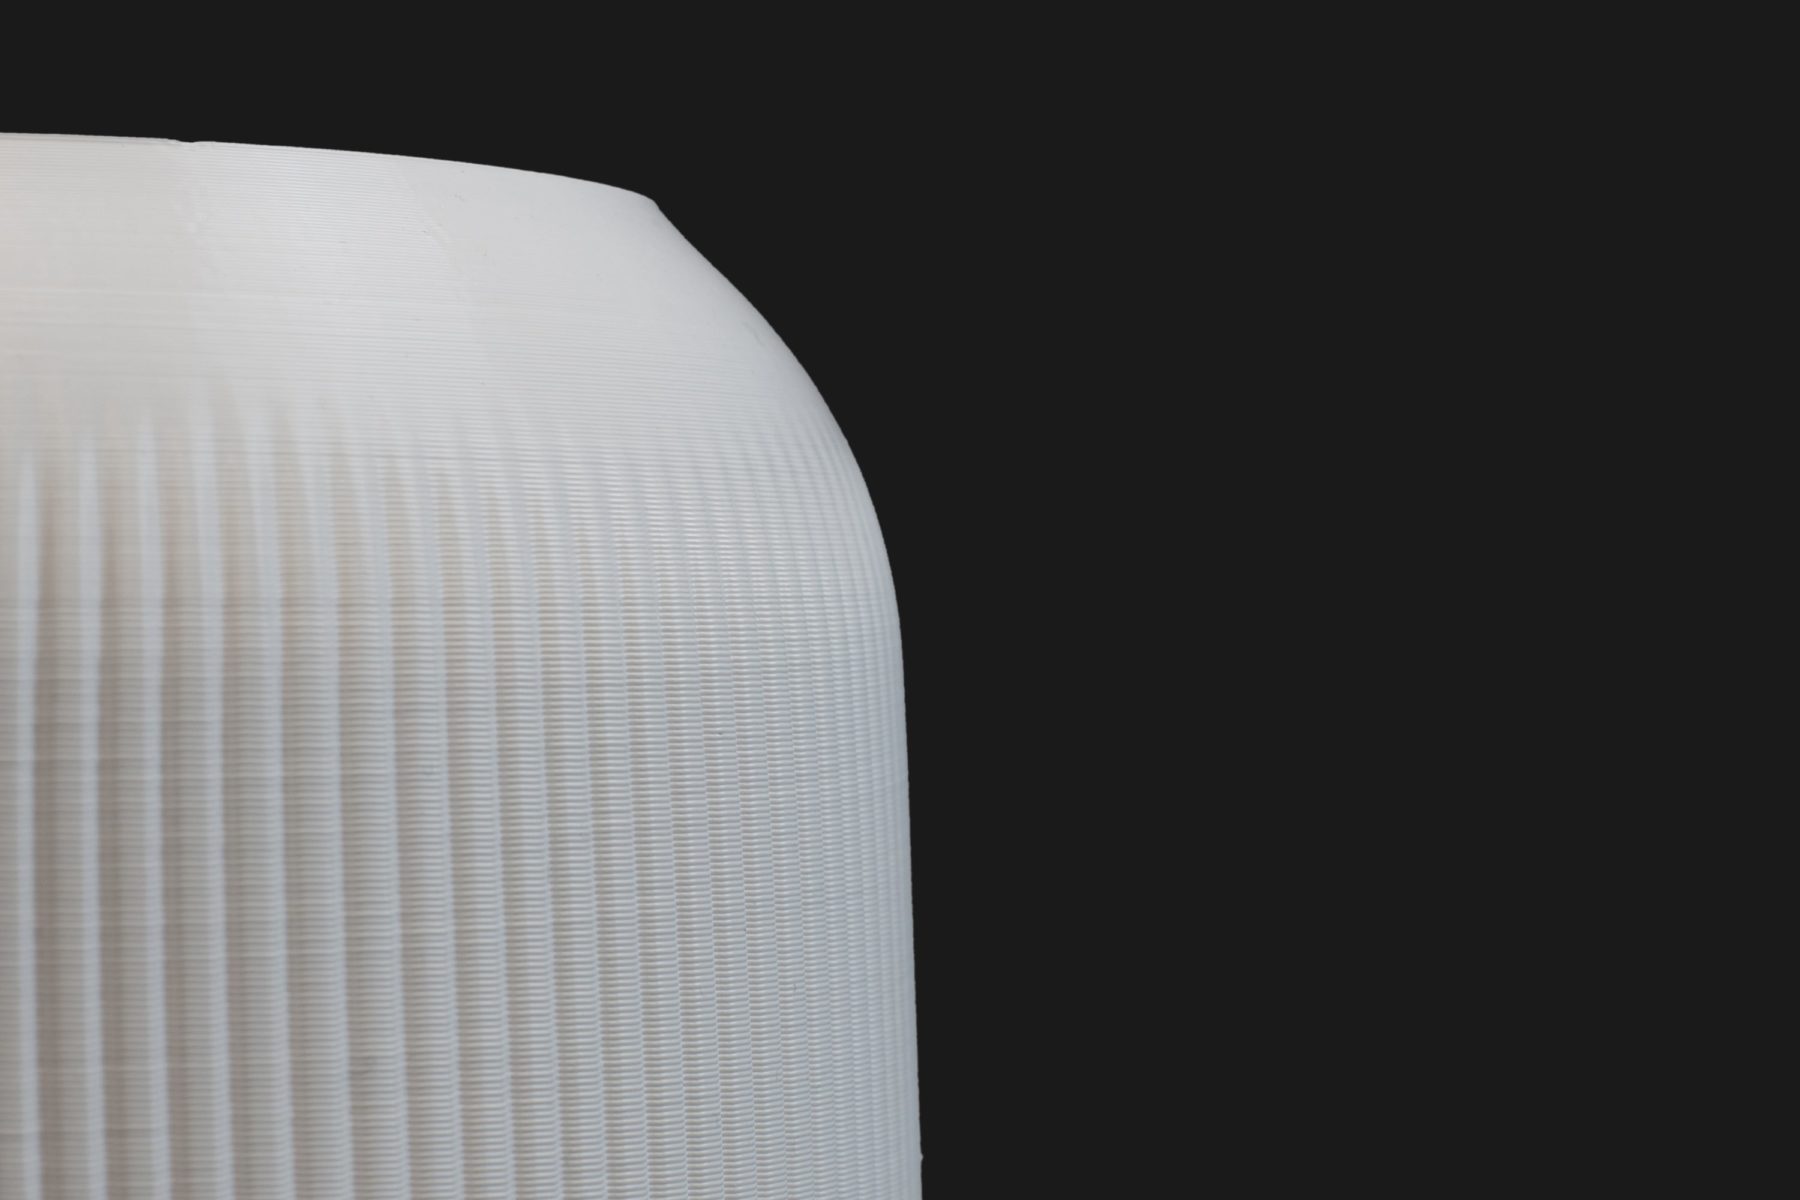 RIBBON lampshade par bold-design pour Batch.works et Plumen avec Reflow filaments